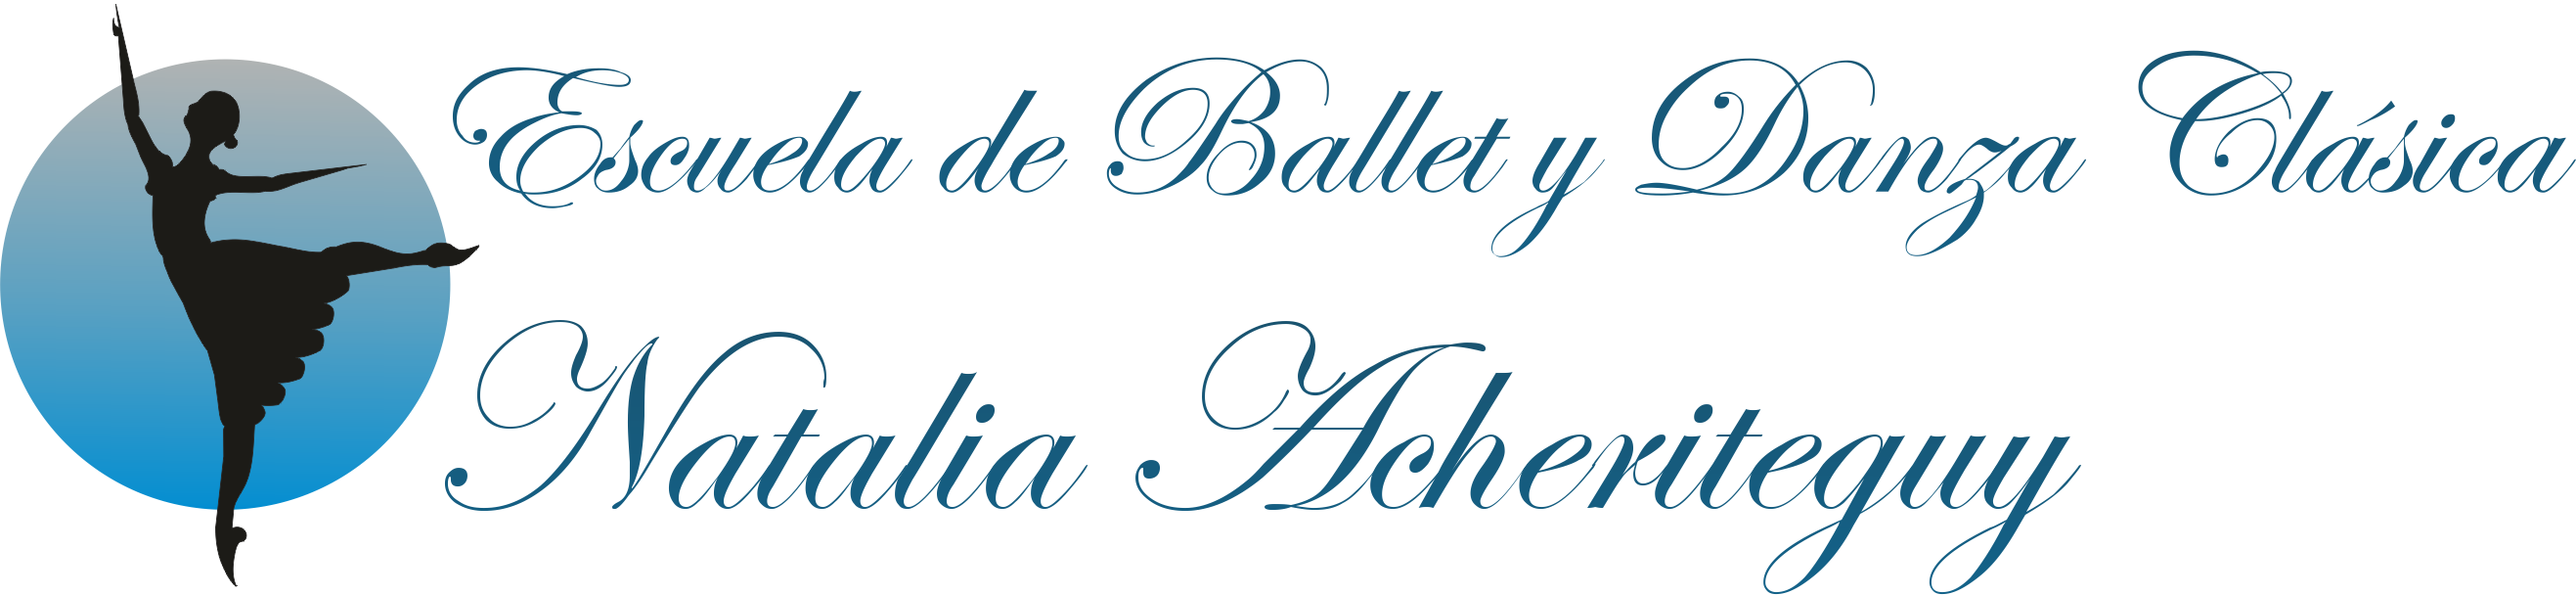 Escuela de Ballet Natalia Acheriteguy